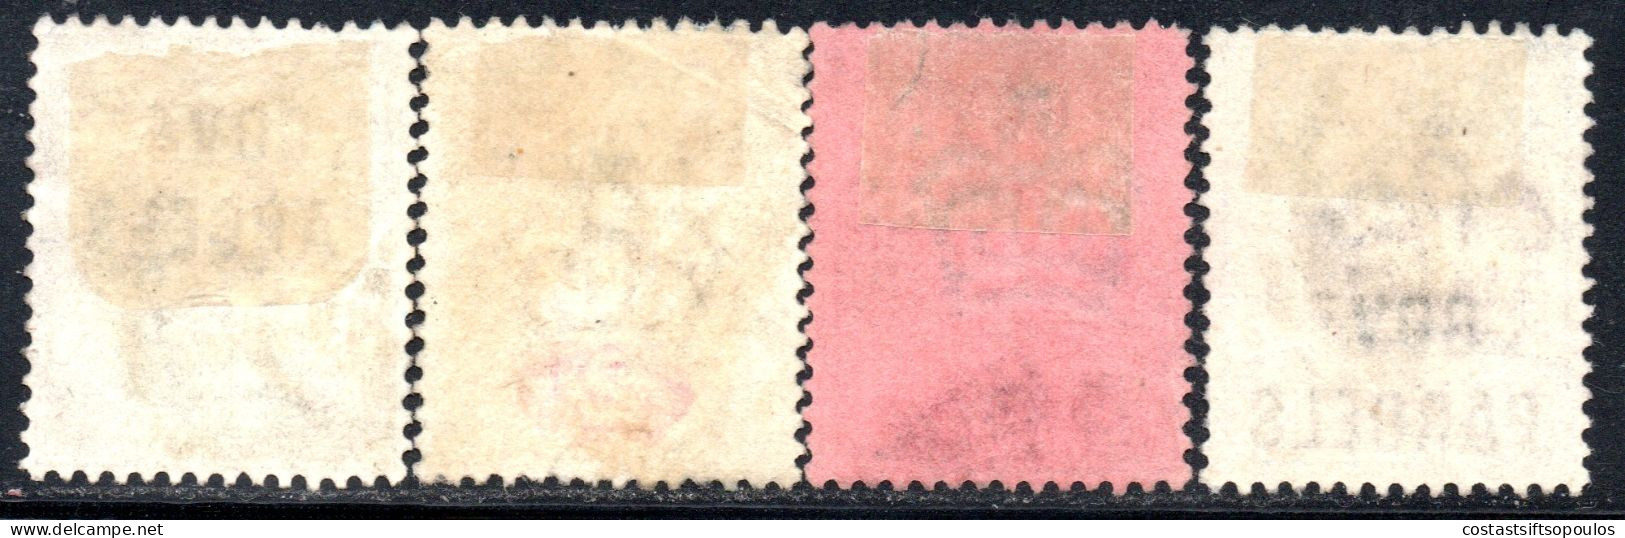 3075. 1887-1900 4 GOVERNMENT PARCELS STAMPS LOT. - Dienstmarken